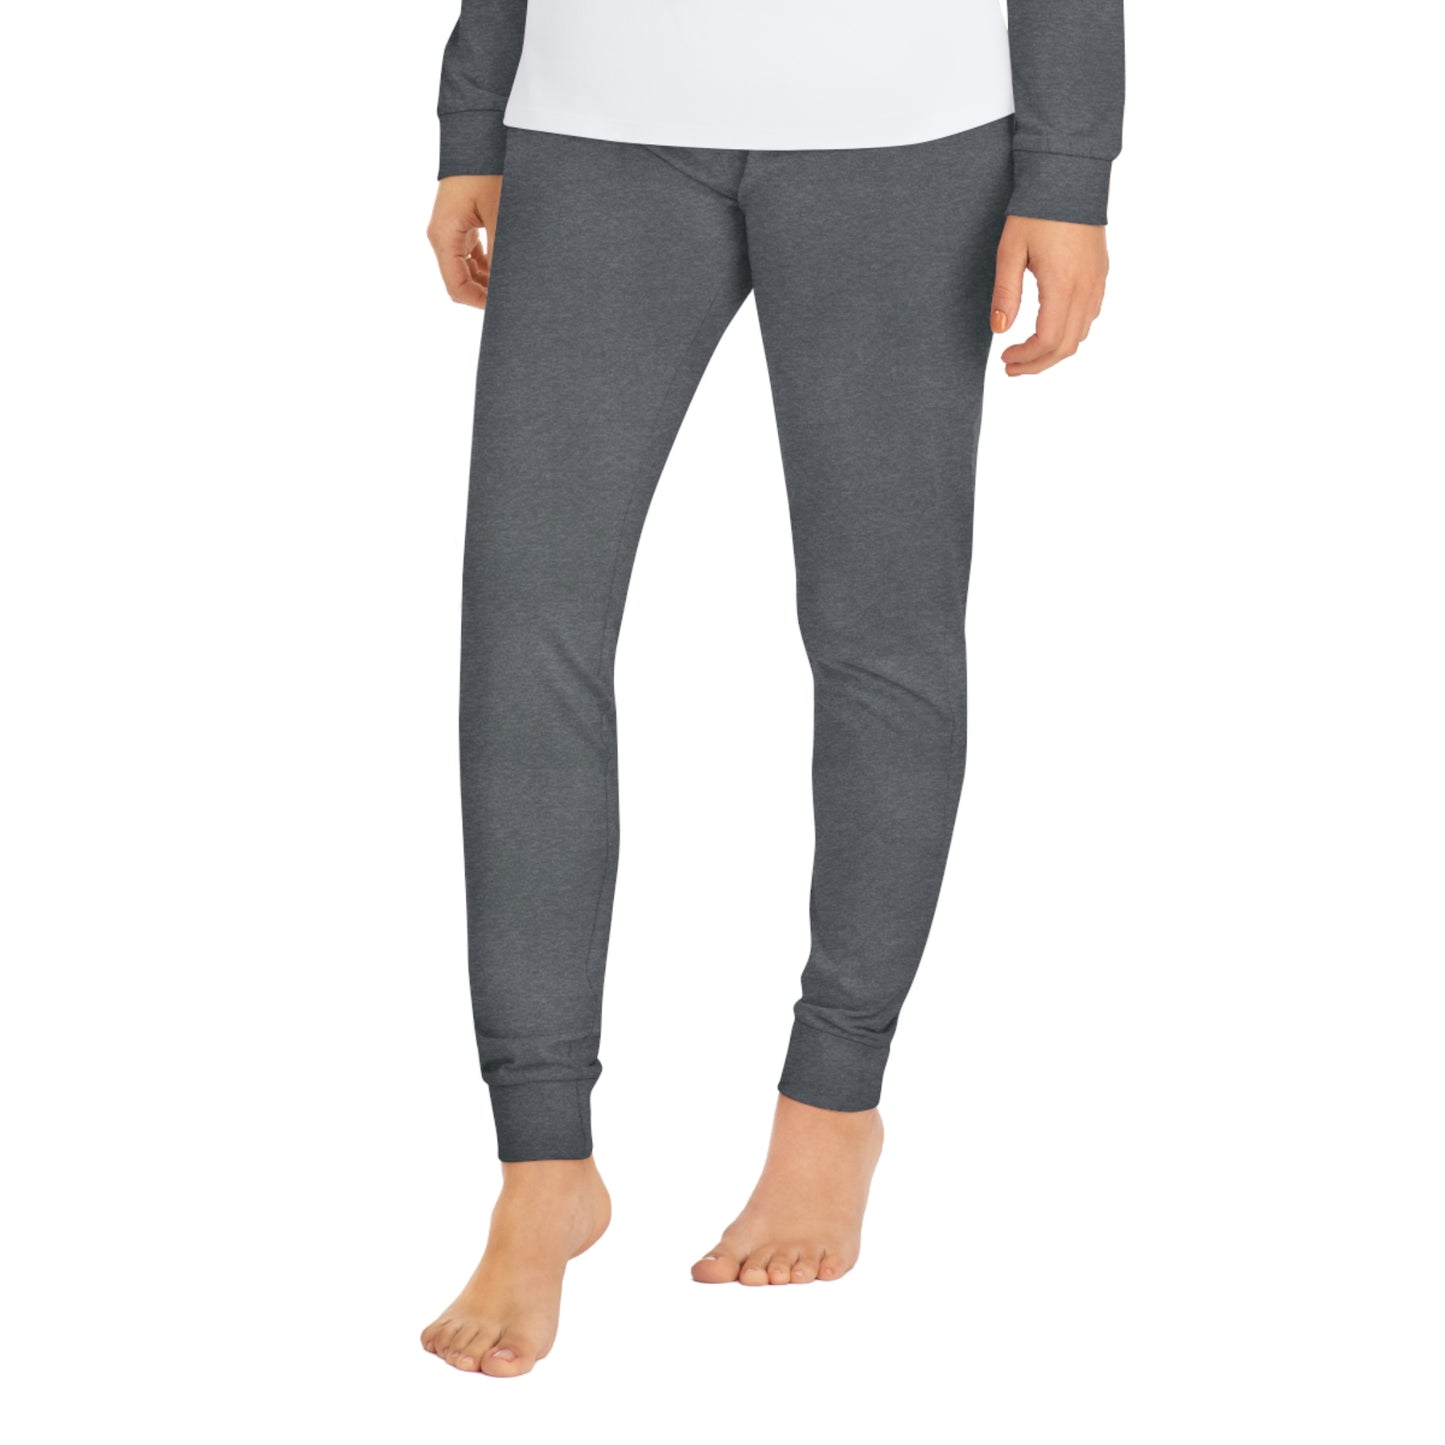 Women's Grey Loungewear Set